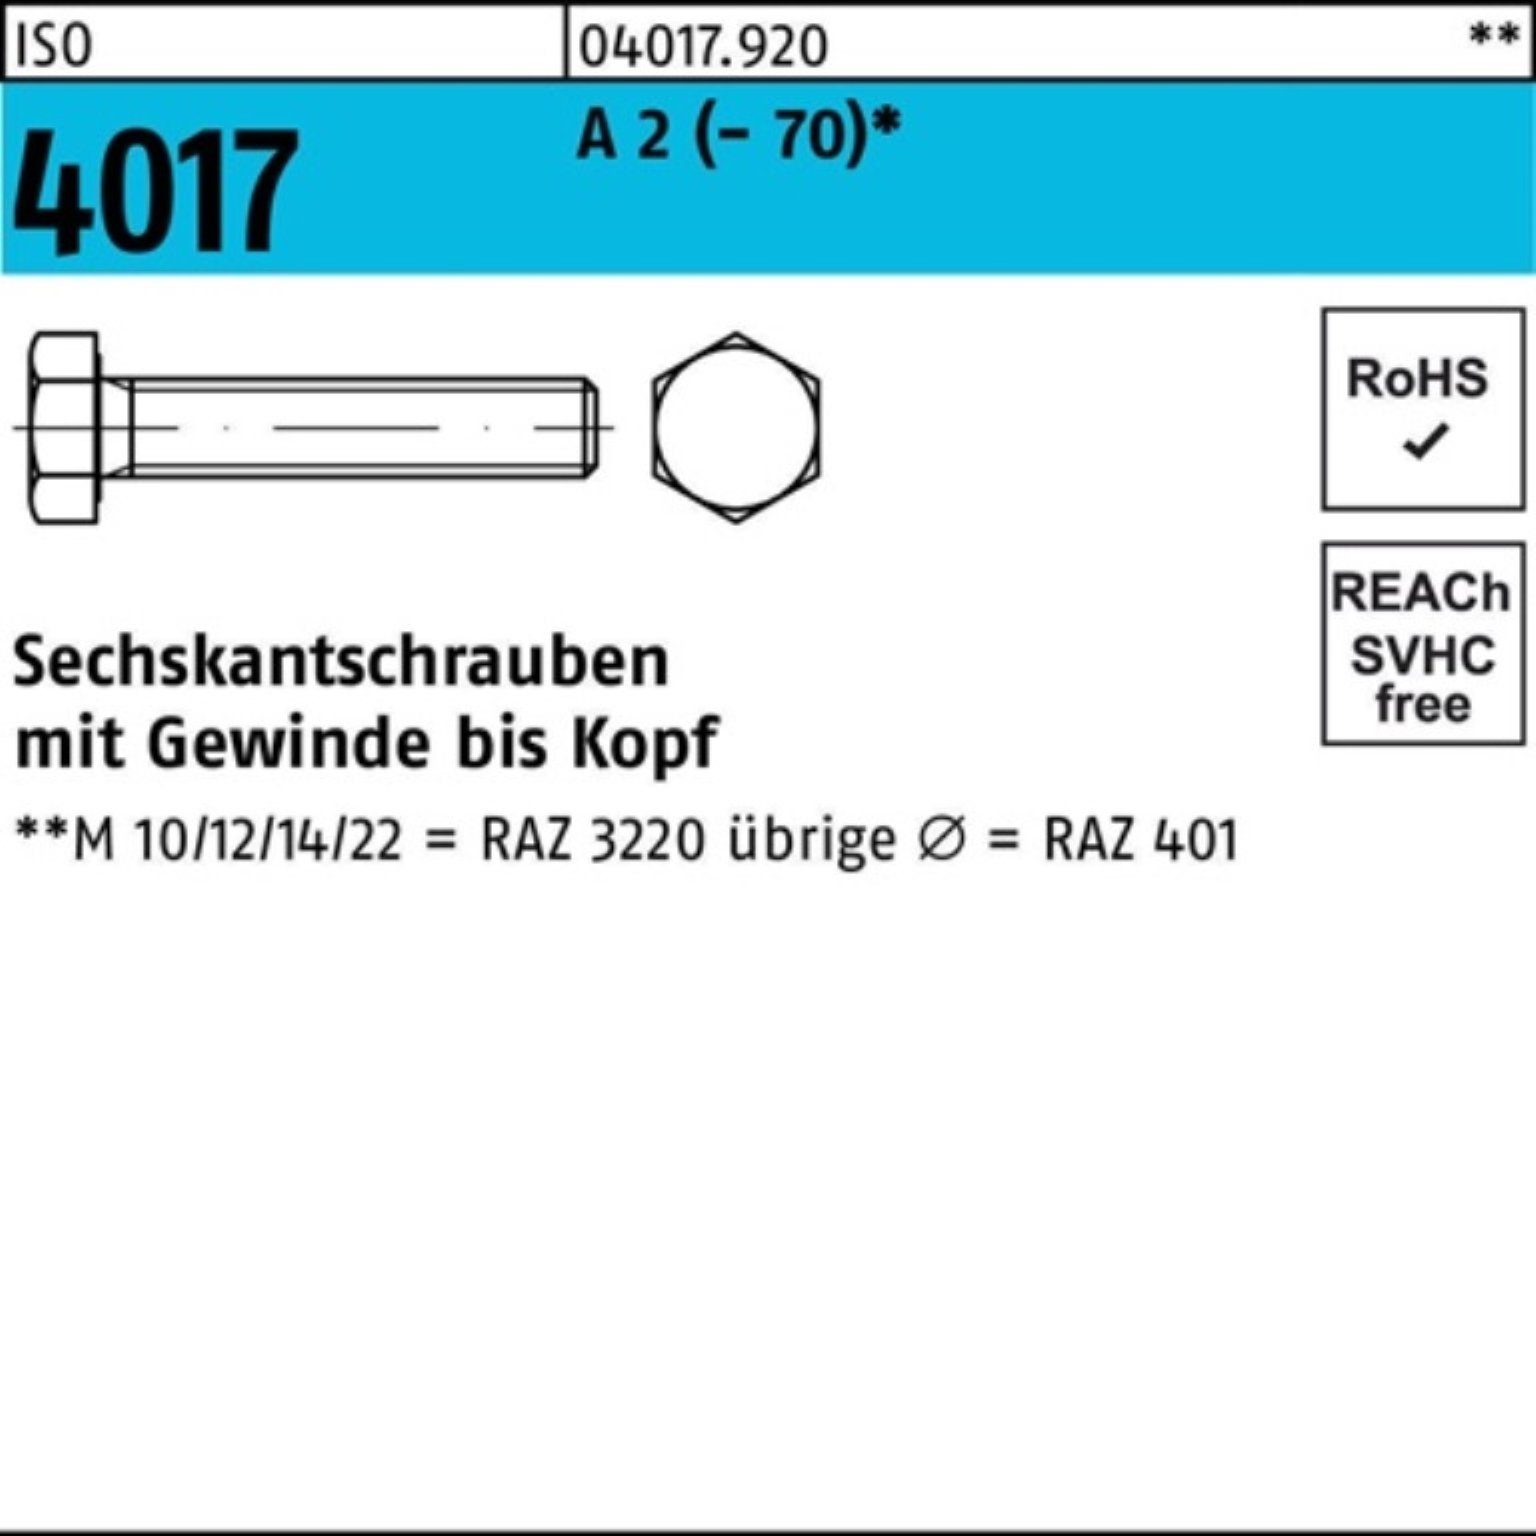 Bufab Sechskantschraube 100er Pack Sechskantschraube ISO 4017 VG M12x 170 A 2 (70) 1 Stück